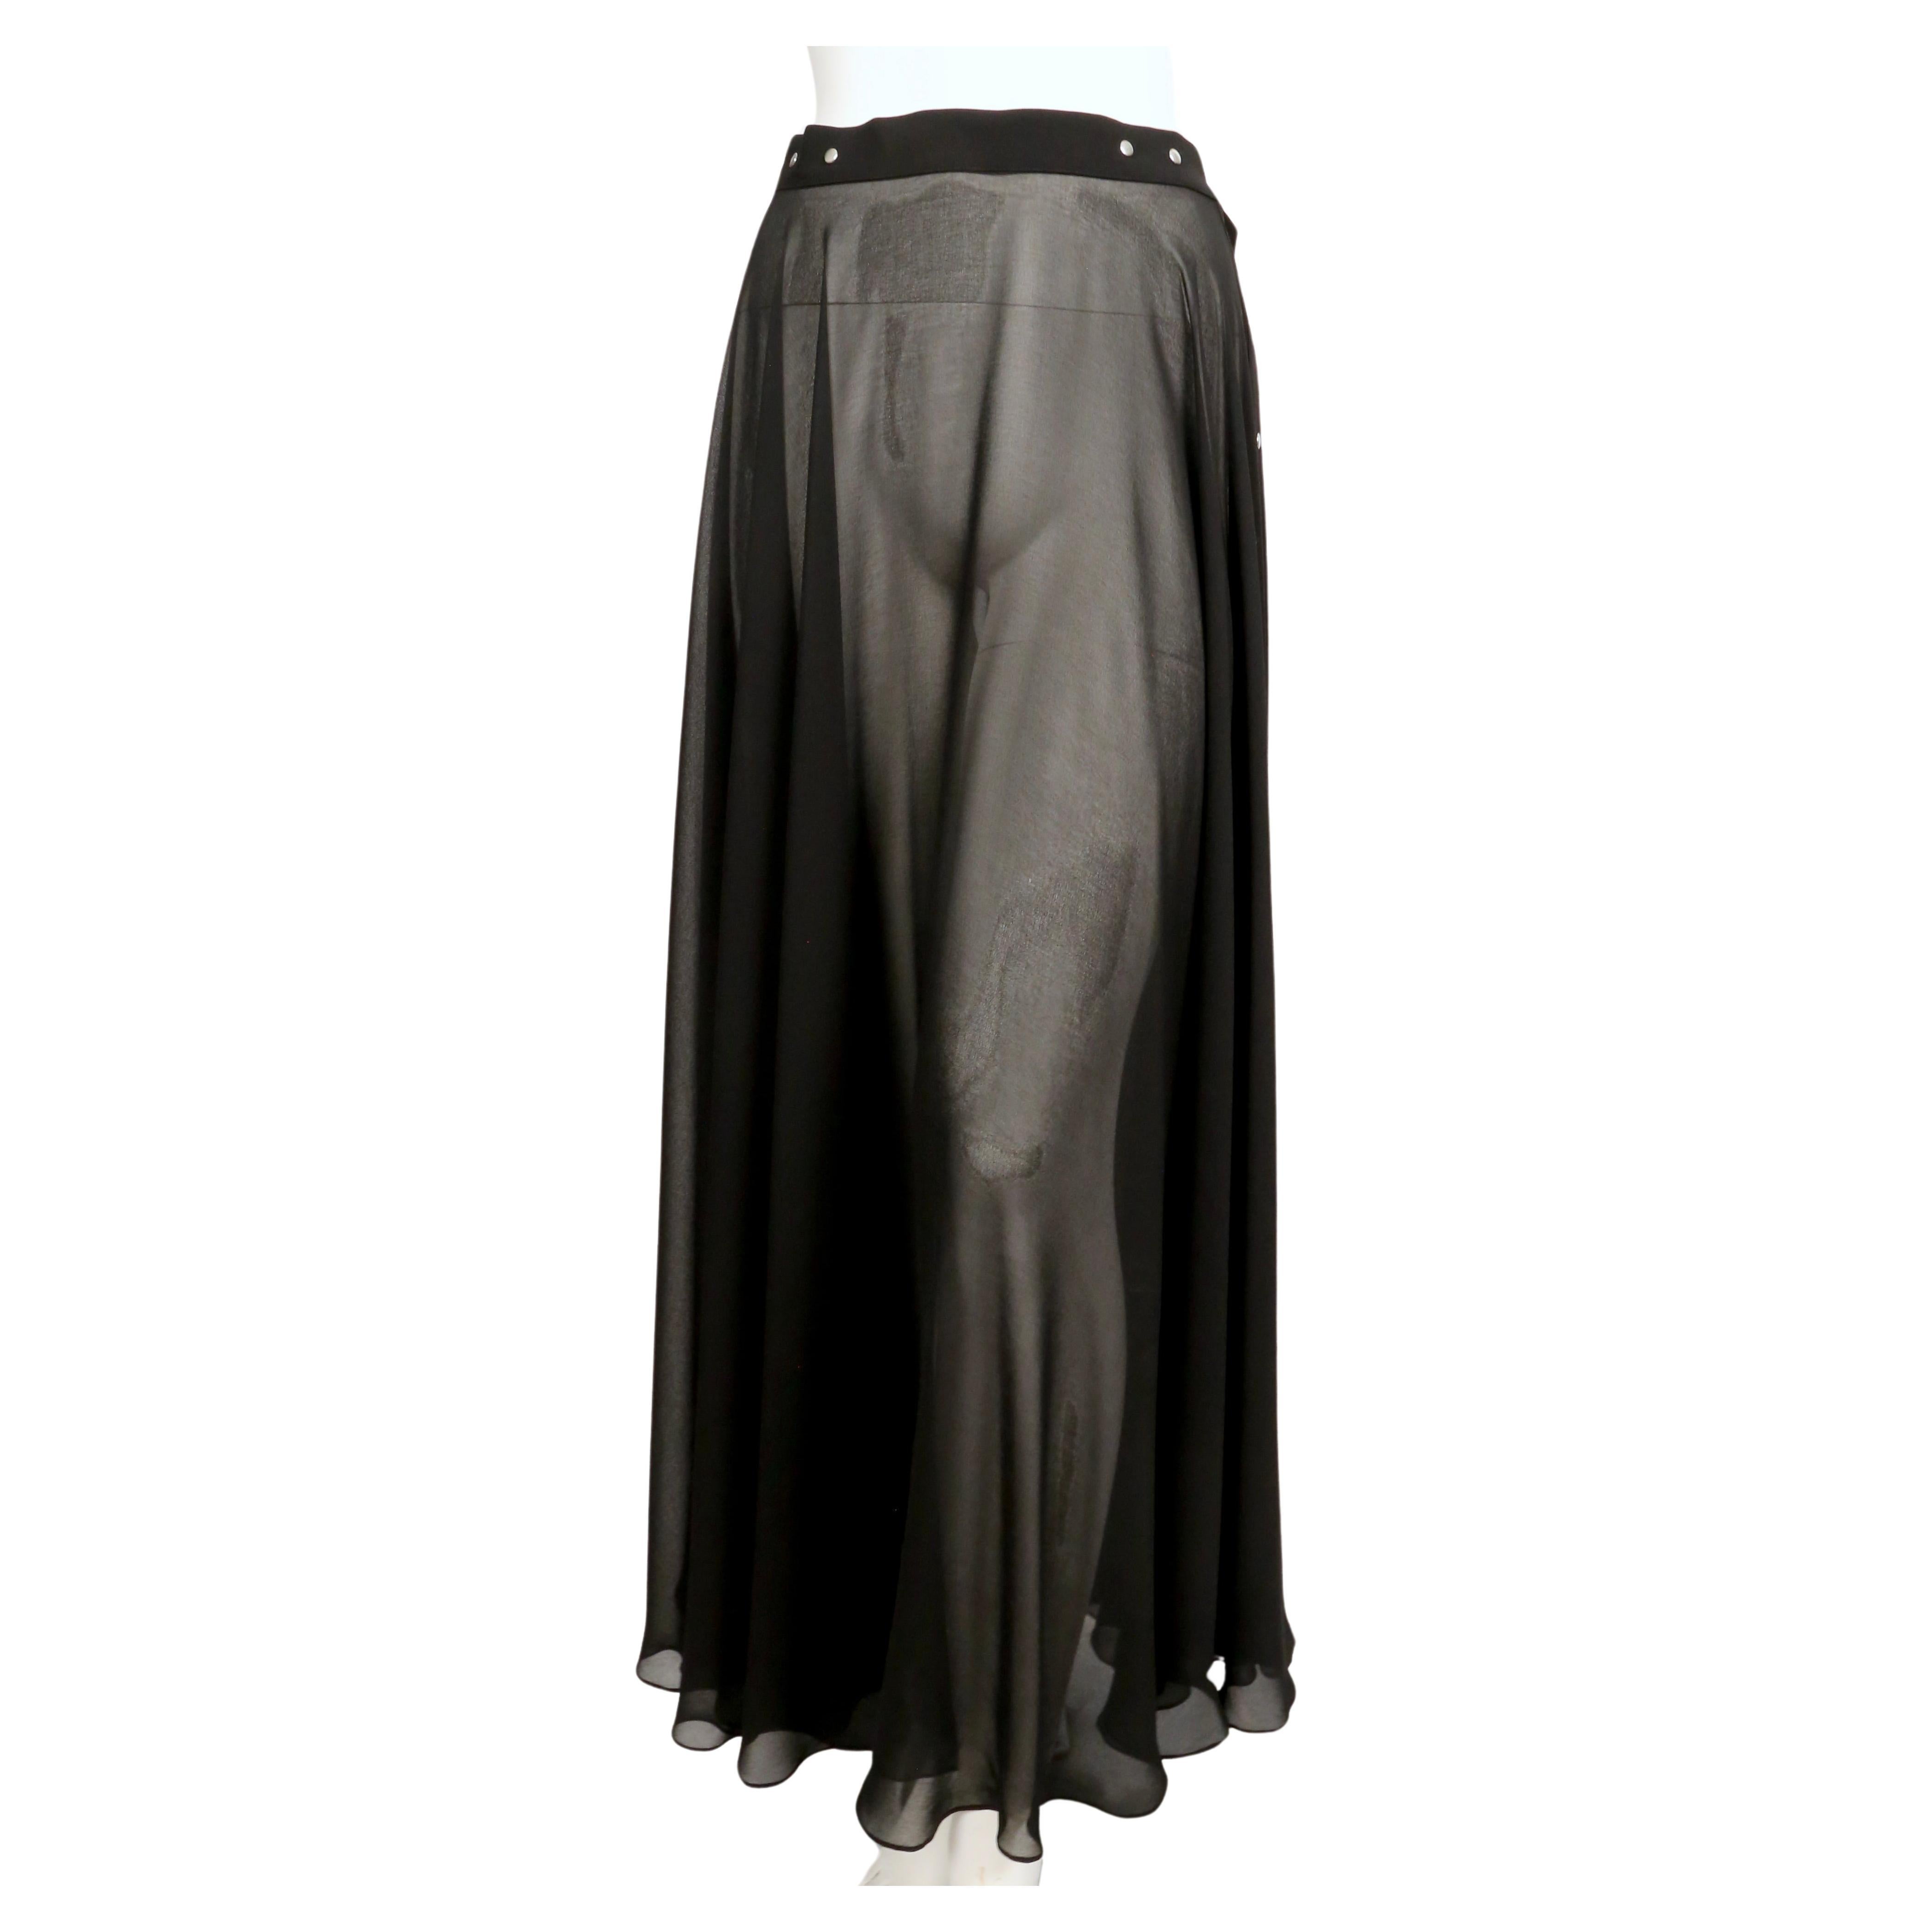 Jupe longue en tissu noir avec fermeture à boutons-pression en argent, conçue par Jean Paul Gaultier et datant de la fin des années 1990. Le tissu a un beau drapé. Pas de label de taille. Mesures approximatives : taille 28,5